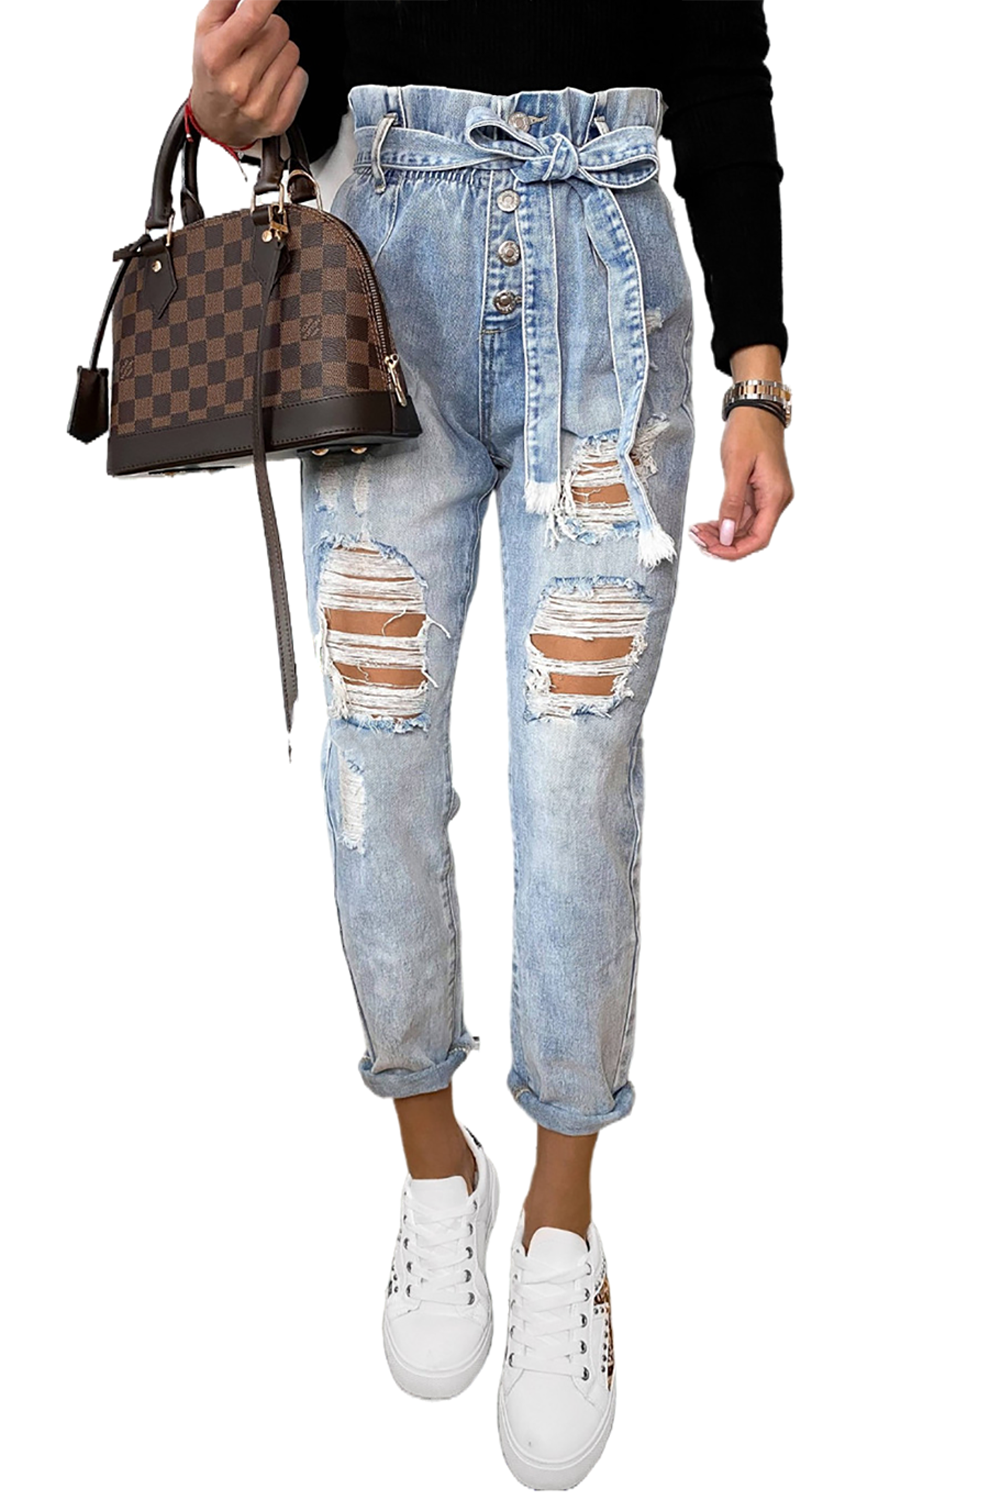 Belted Paper Bag Waist Holes Vintage Jeans Jeans JT's Designer Fashion